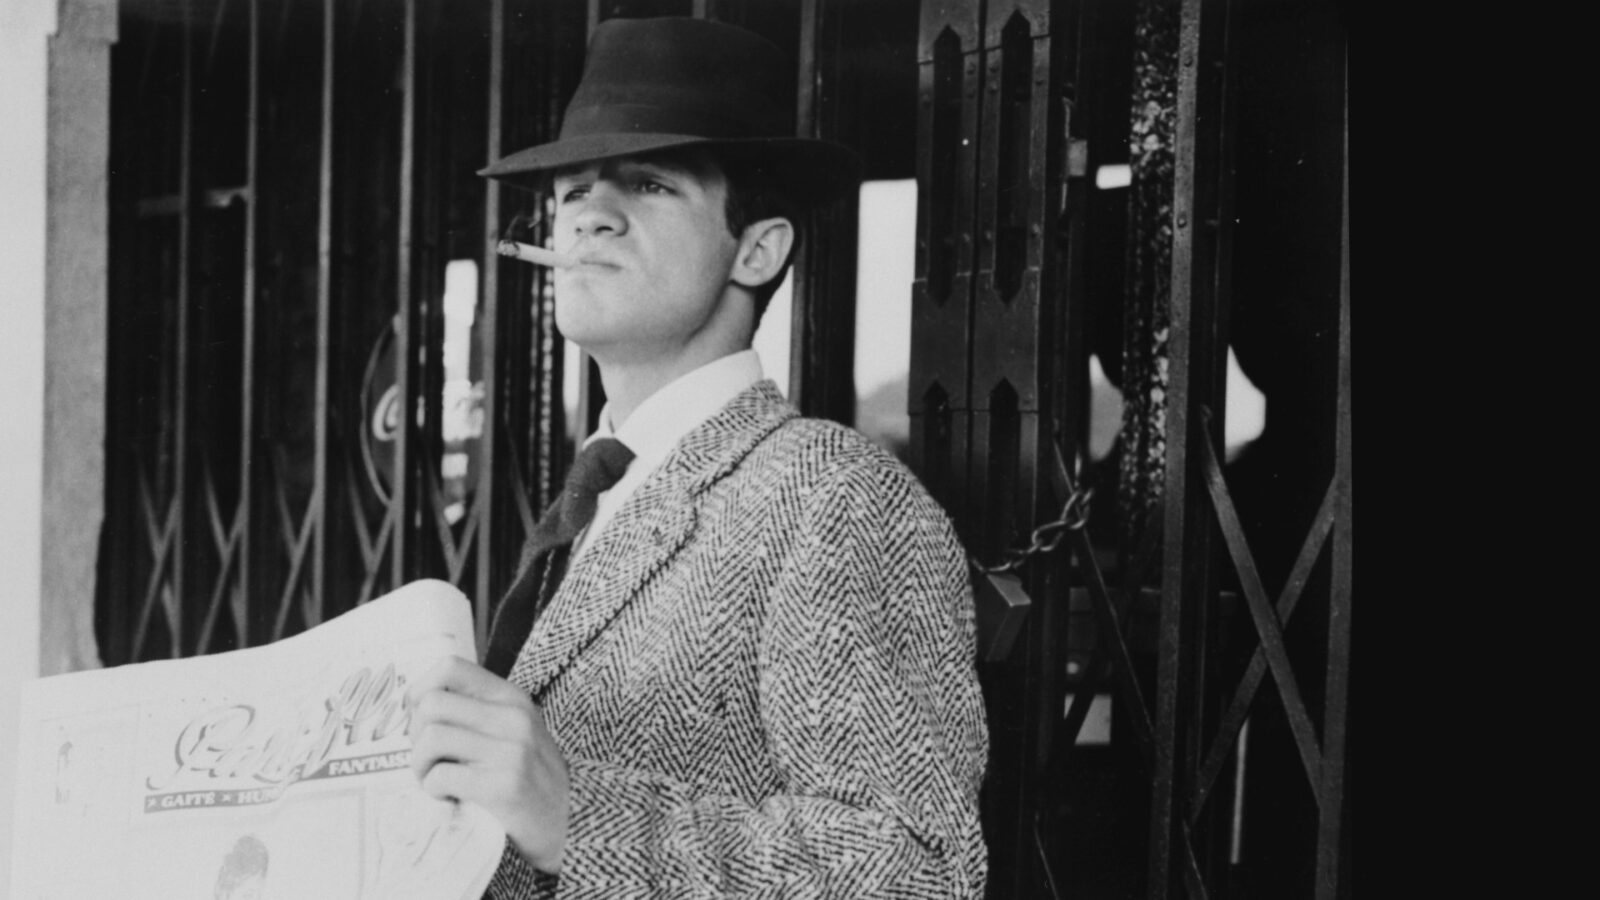 Filmstill aus dem Film Außer Atem. Ein Mann steht mit Zigarette im Mund, einer Zeitung in der Hand und Hut auf dem Kopf vor einer geschlossenen Gittertür.